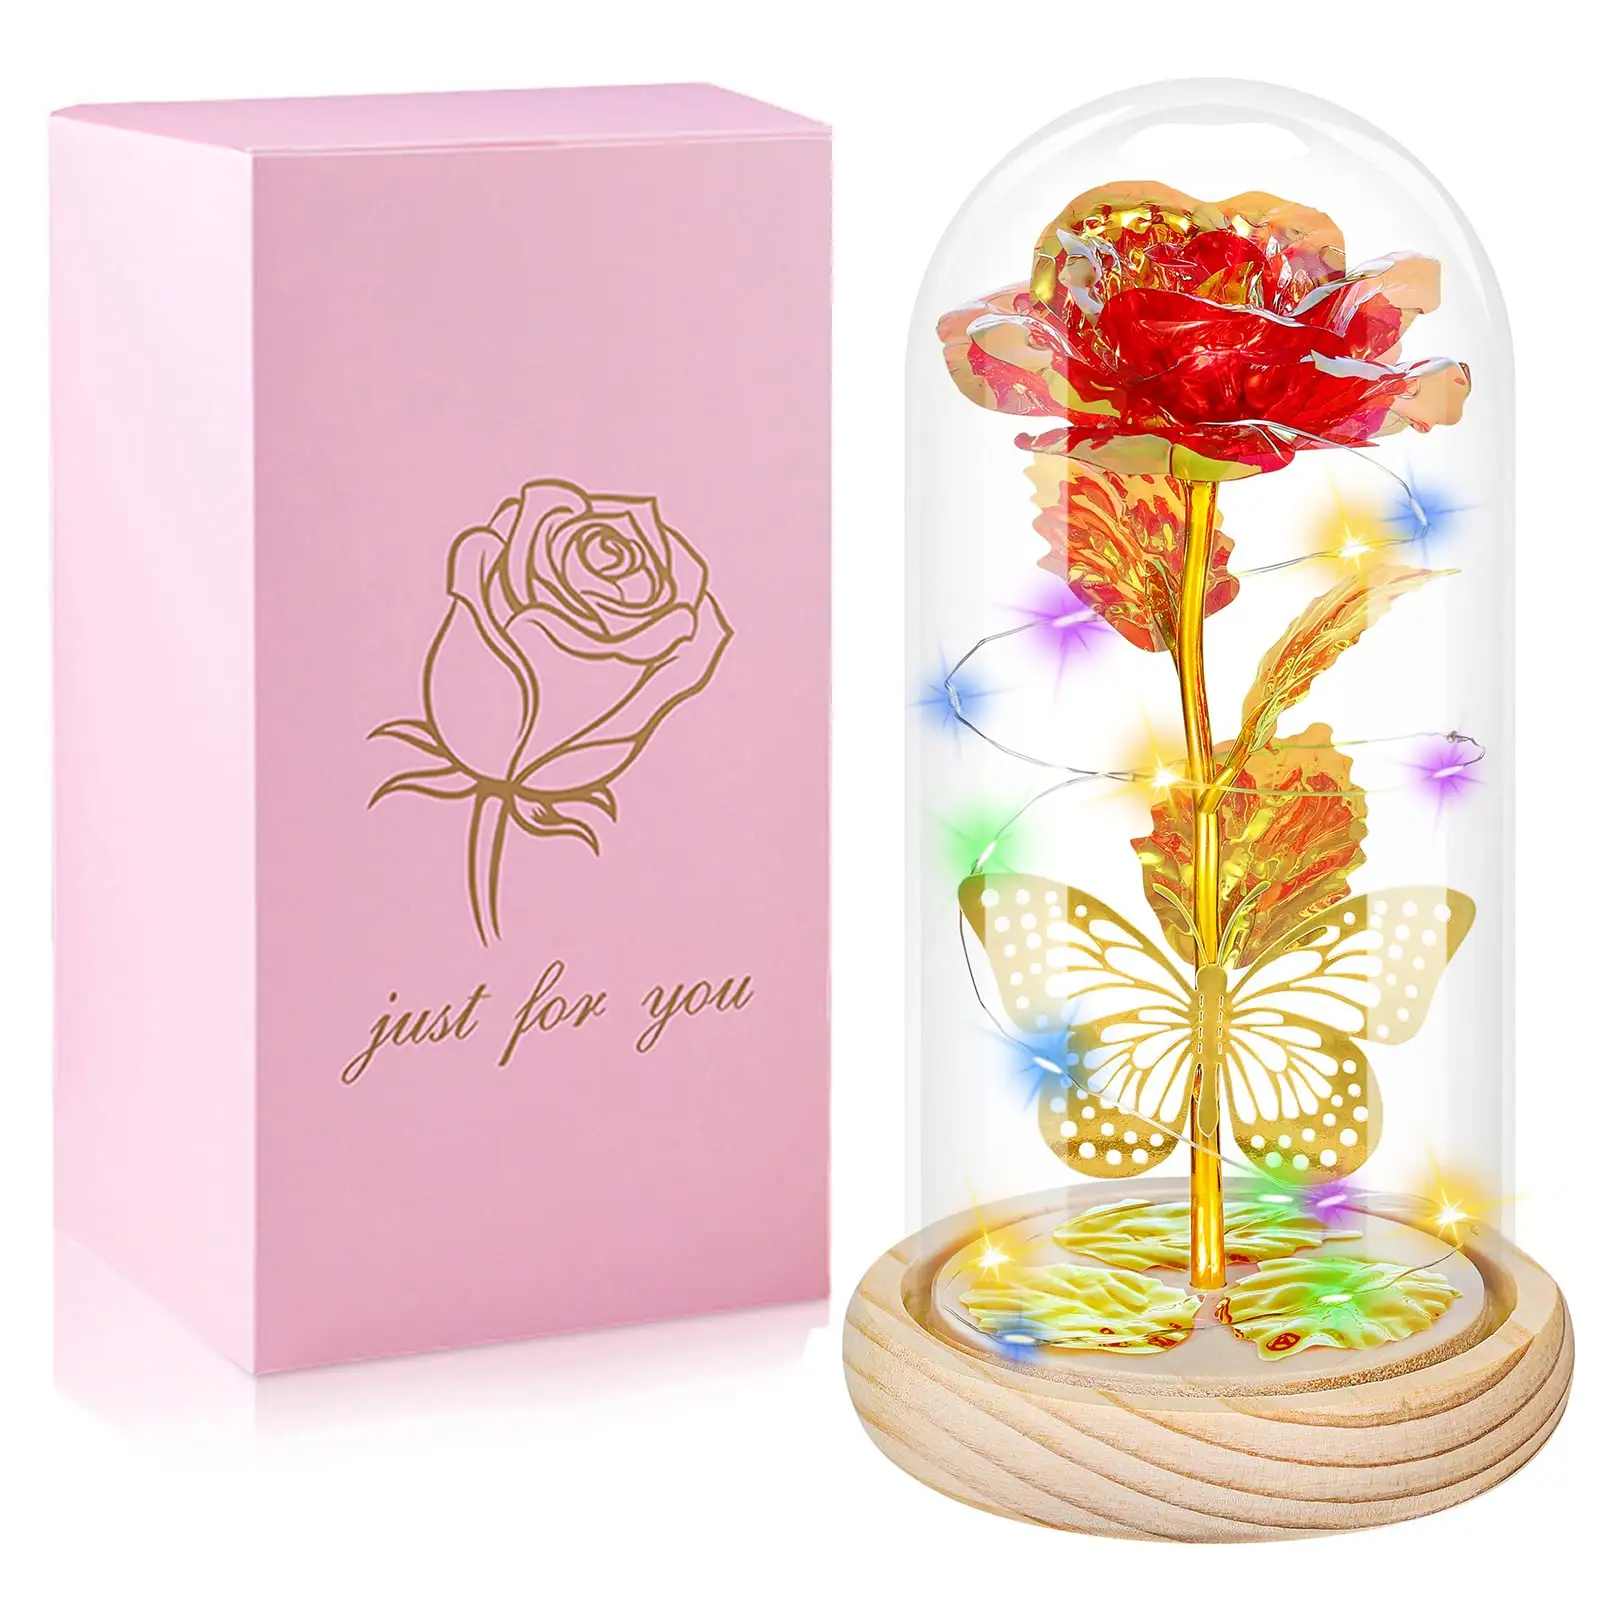 פריט מתנה זכוכית ורד פרח מתנות יום הולדת לנשים אמא היא מגיעה עם אריזה ורודה קופסת מתנה התאמה אישית של רעיונות למתנה